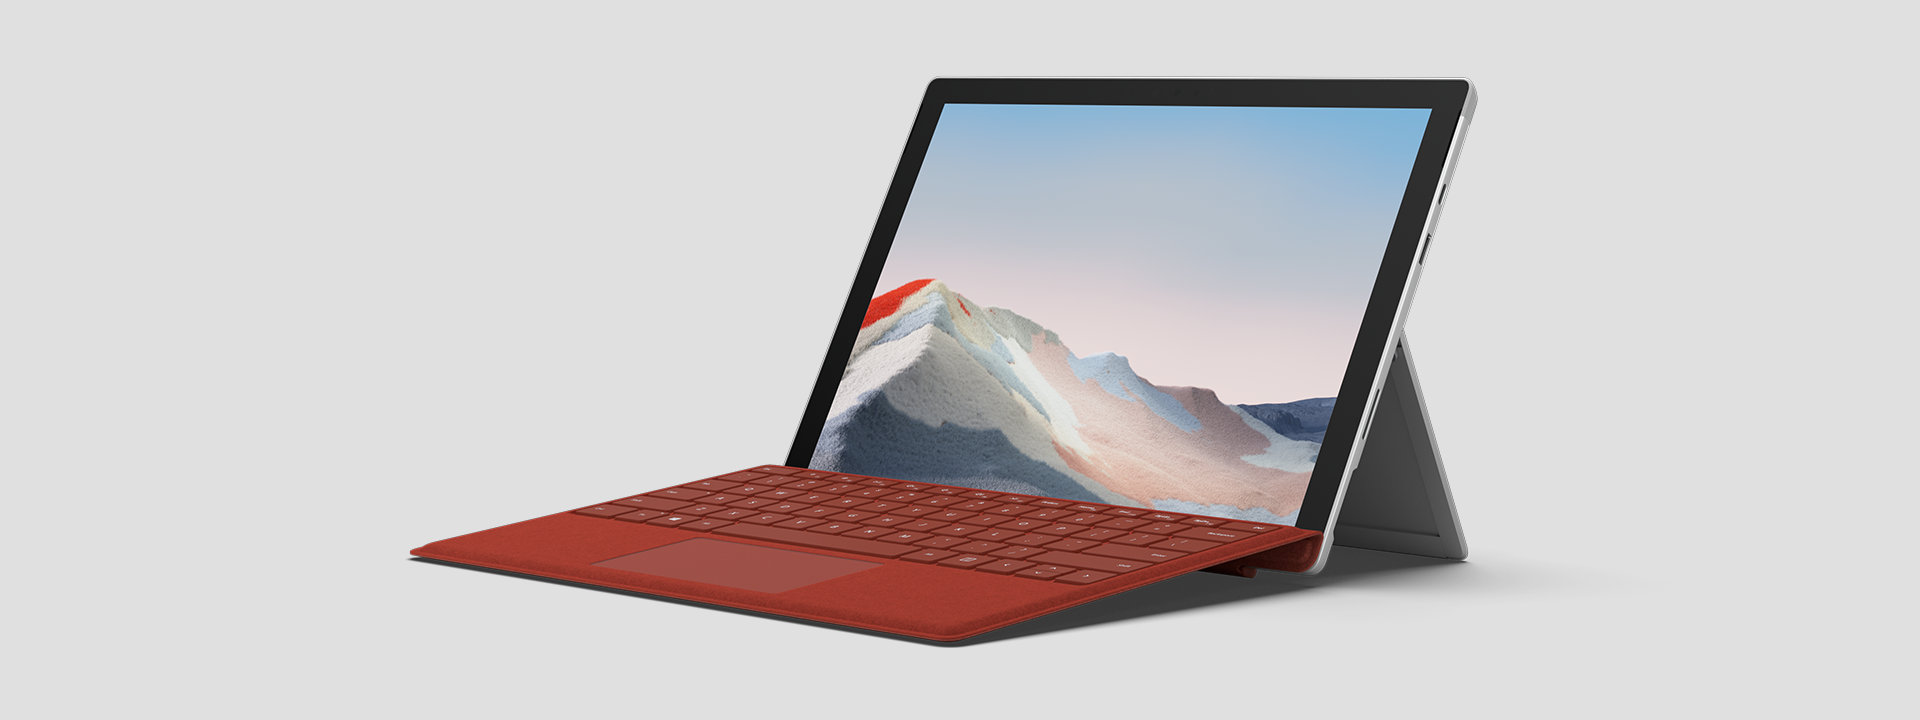 Surface Pro 7 Plus per le aziende in modalità Laptop con tastiera.